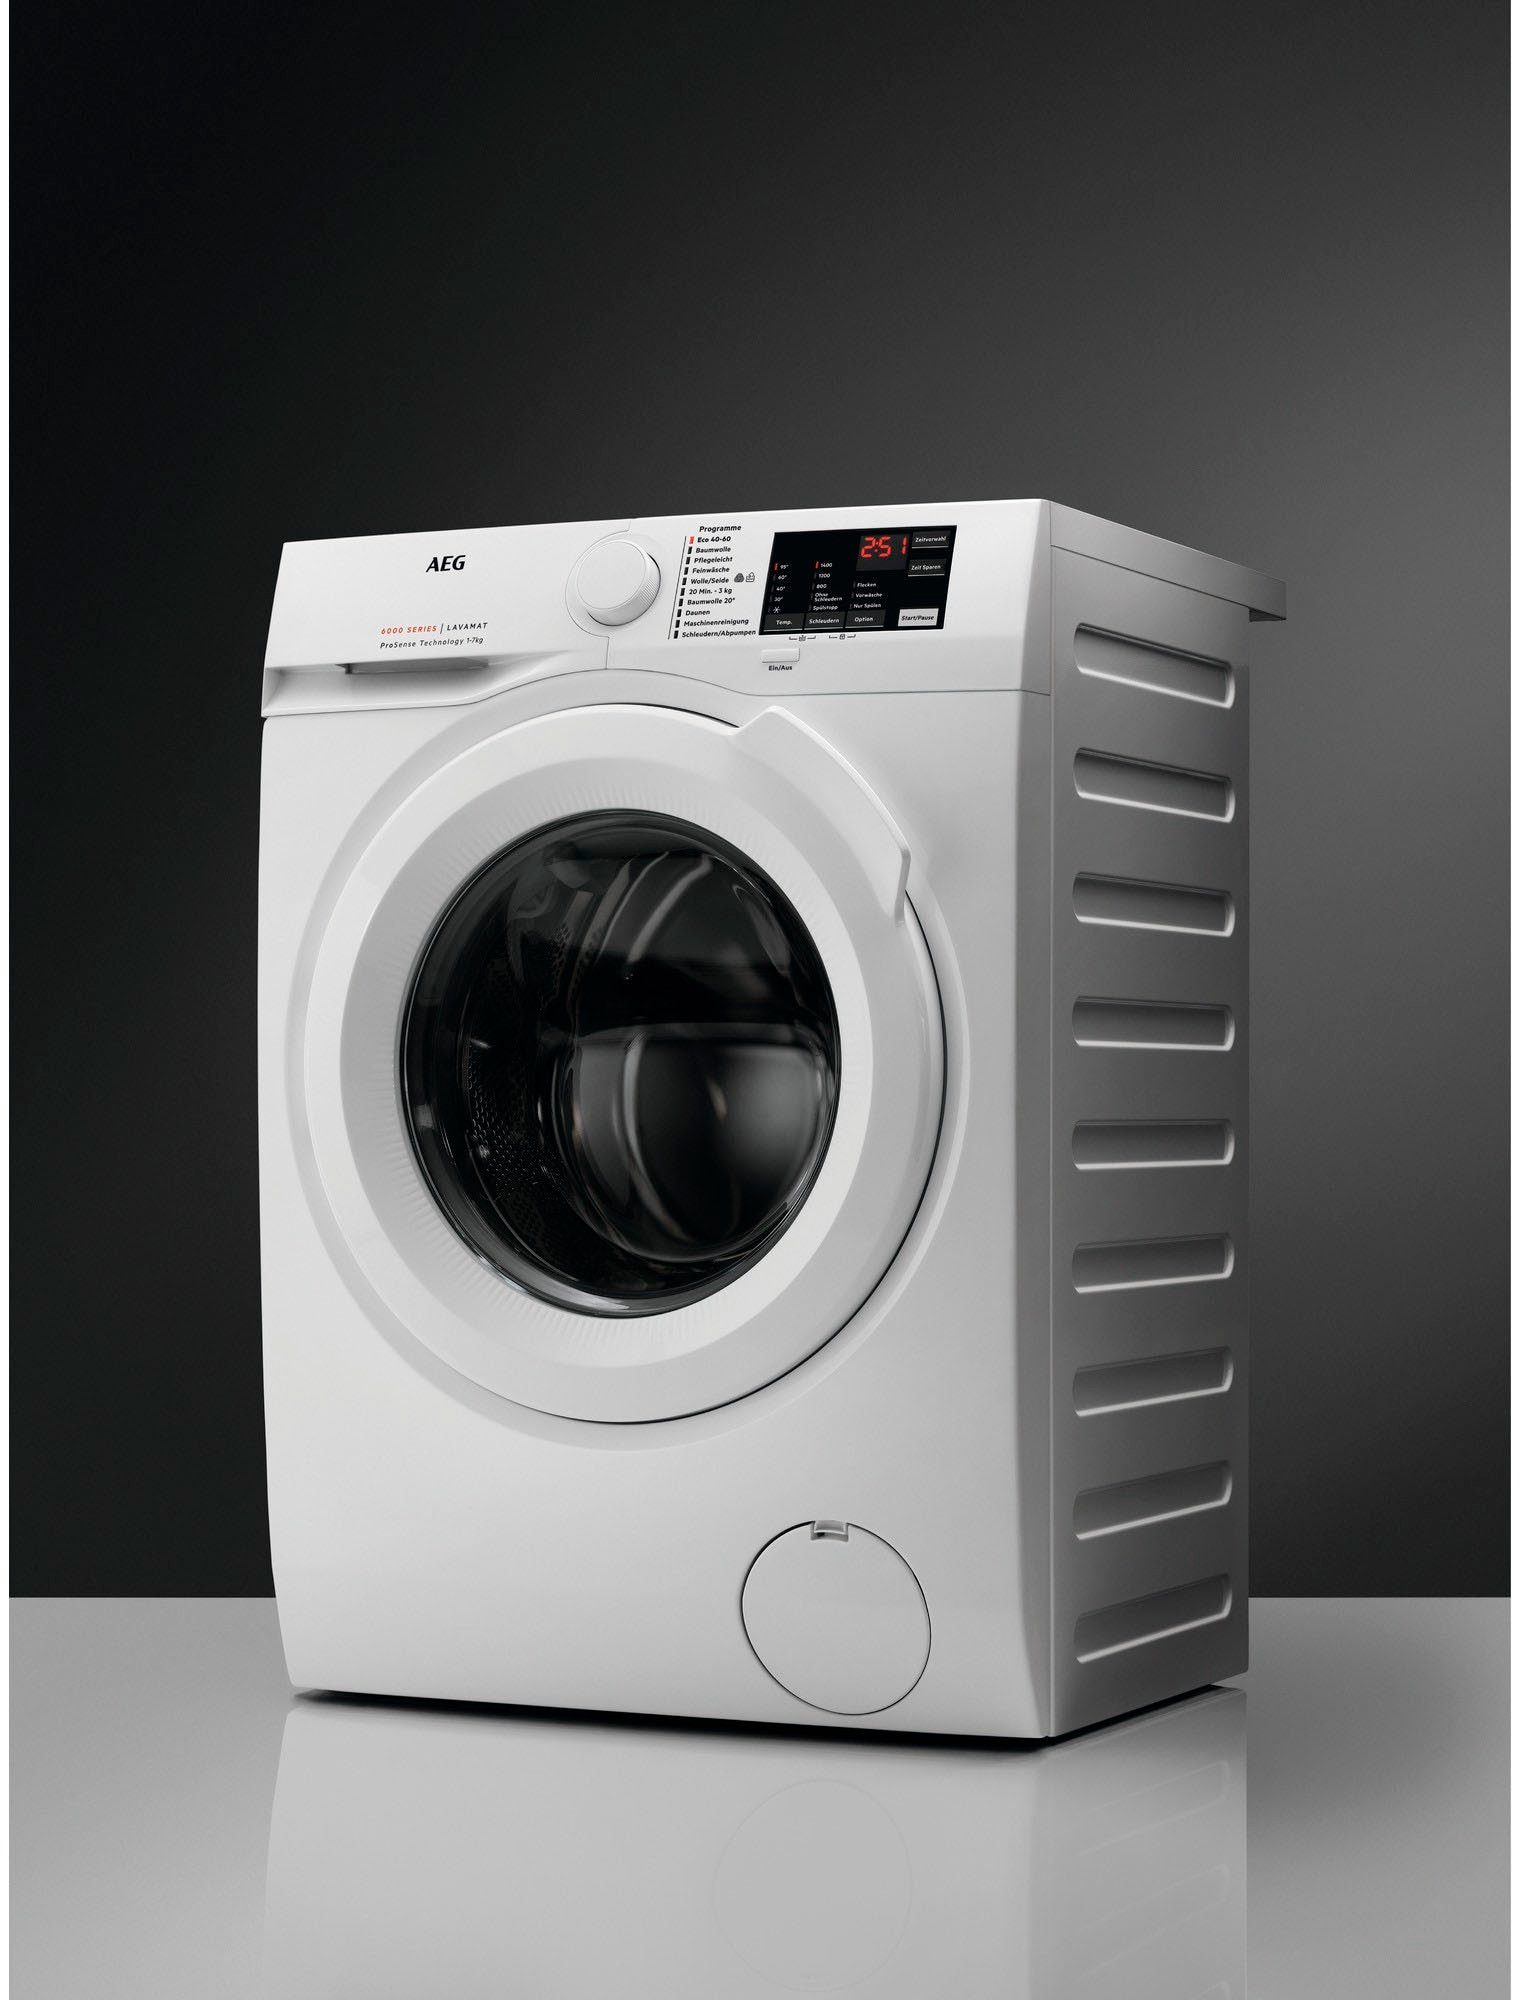 L6FBA51480 kg, Programm mit Anti-Allergie Dampf 1400 AEG Waschmaschine 914913590, U/min, Hygiene-/ 8